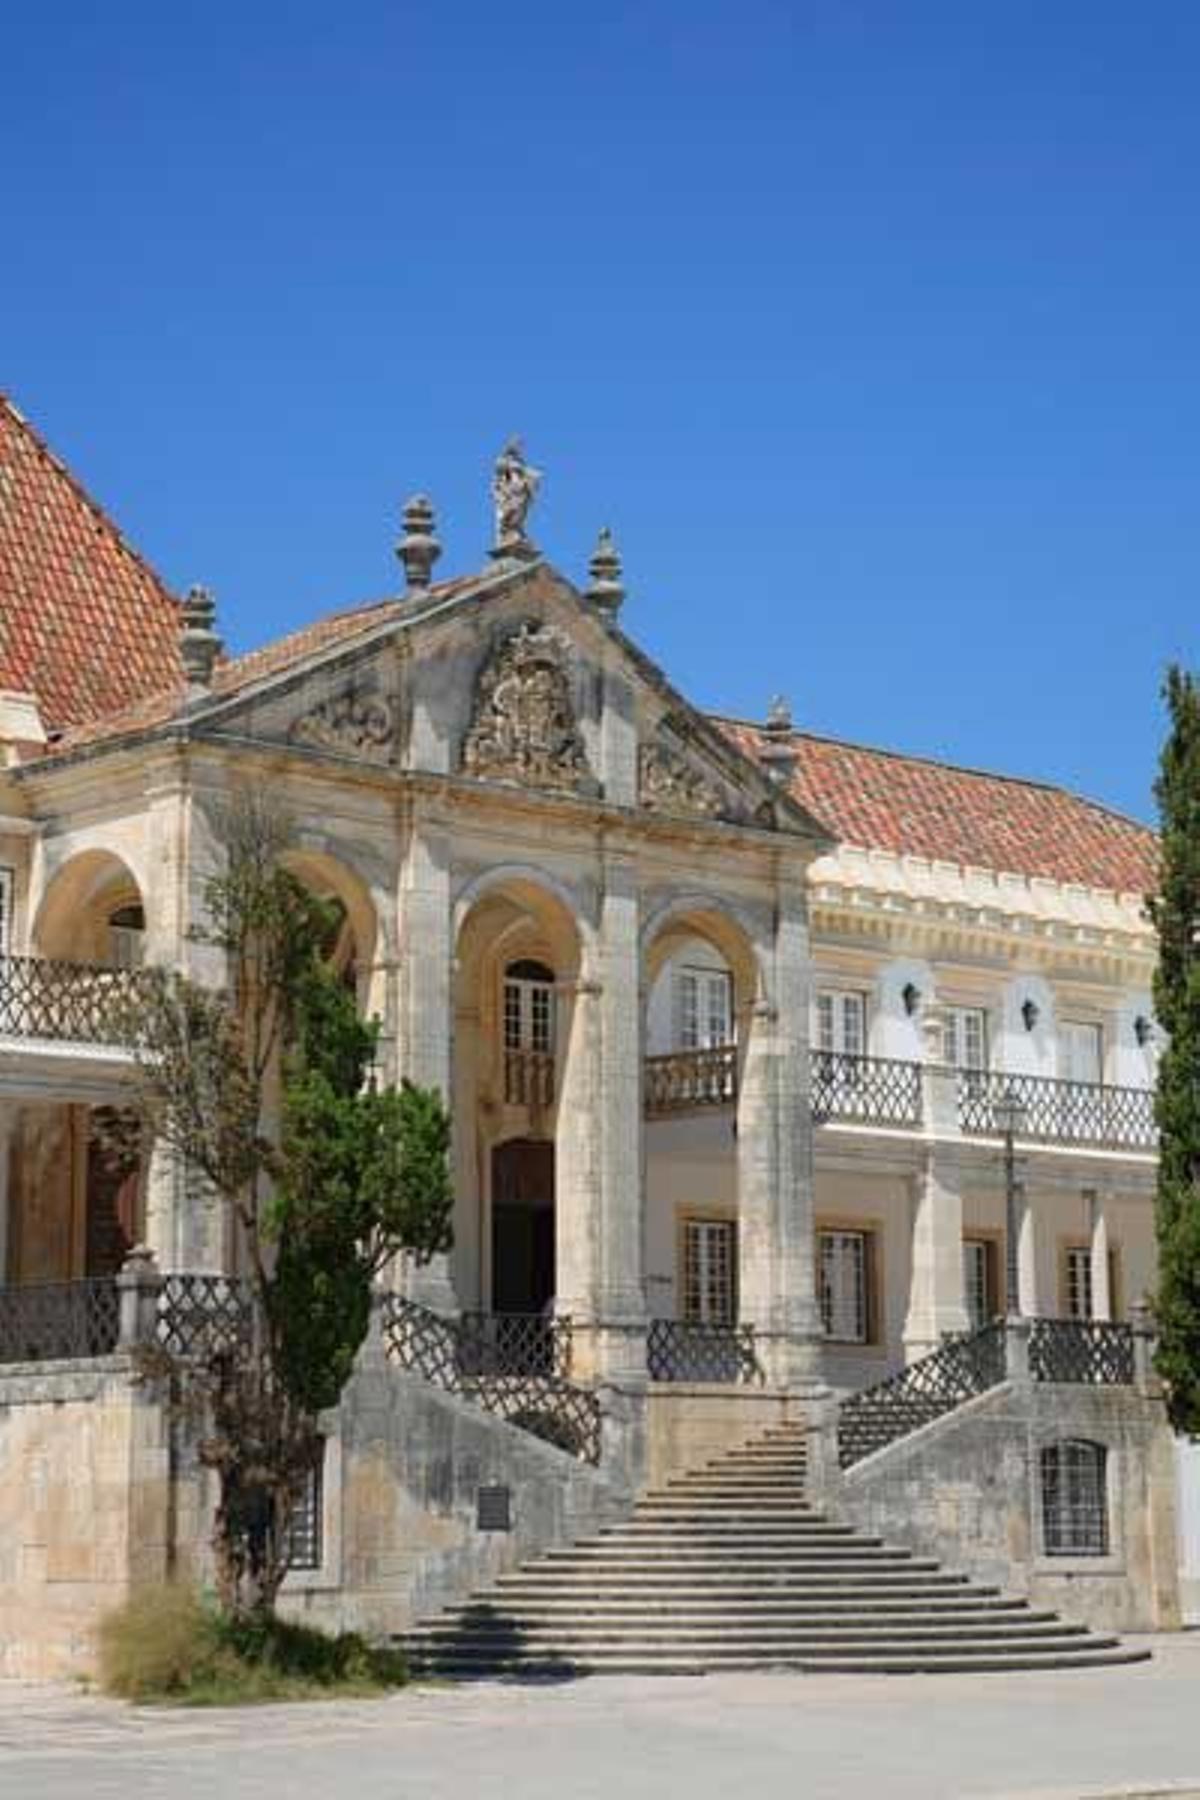 Detalle de una de las puertas de la Universidad de Coimbra